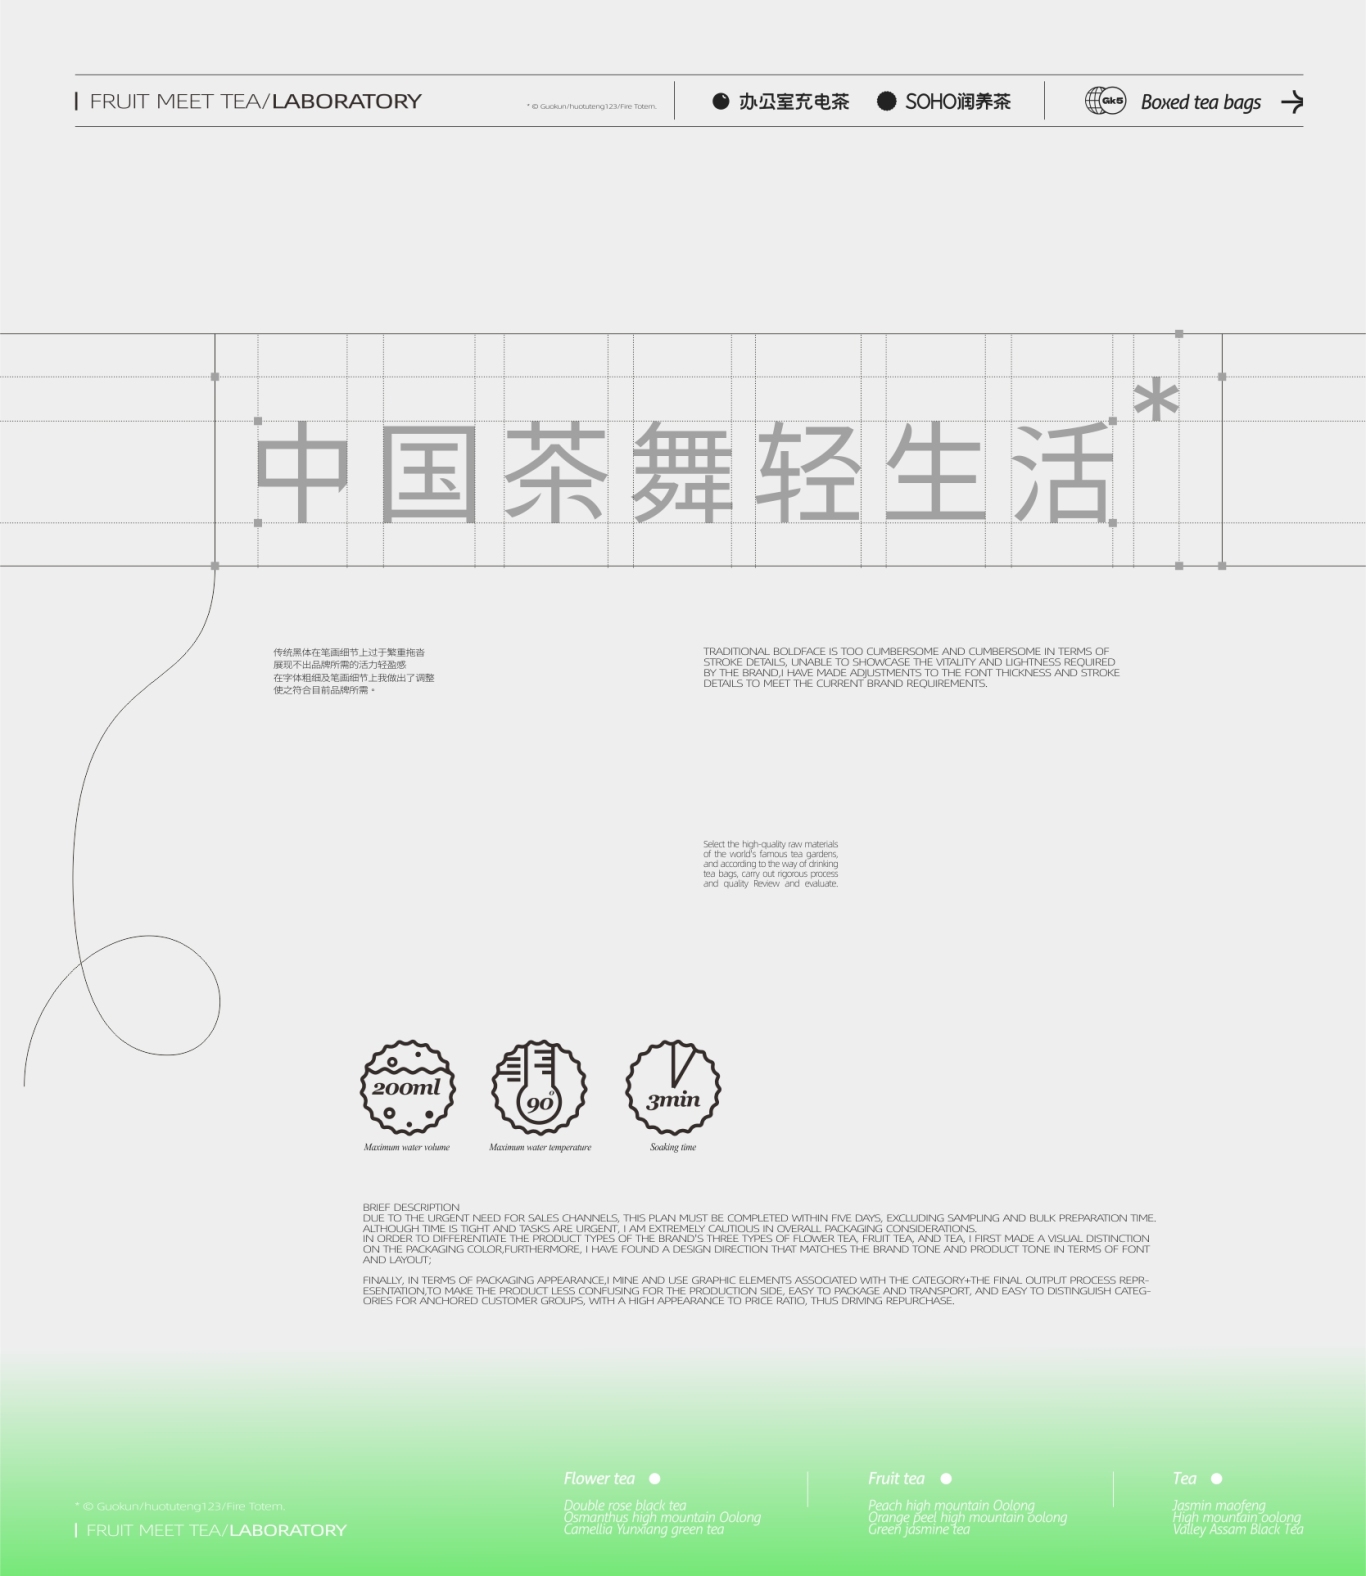 呈果(合肥)品牌 X 果遇茶2023袋泡茶系列包装设计图13